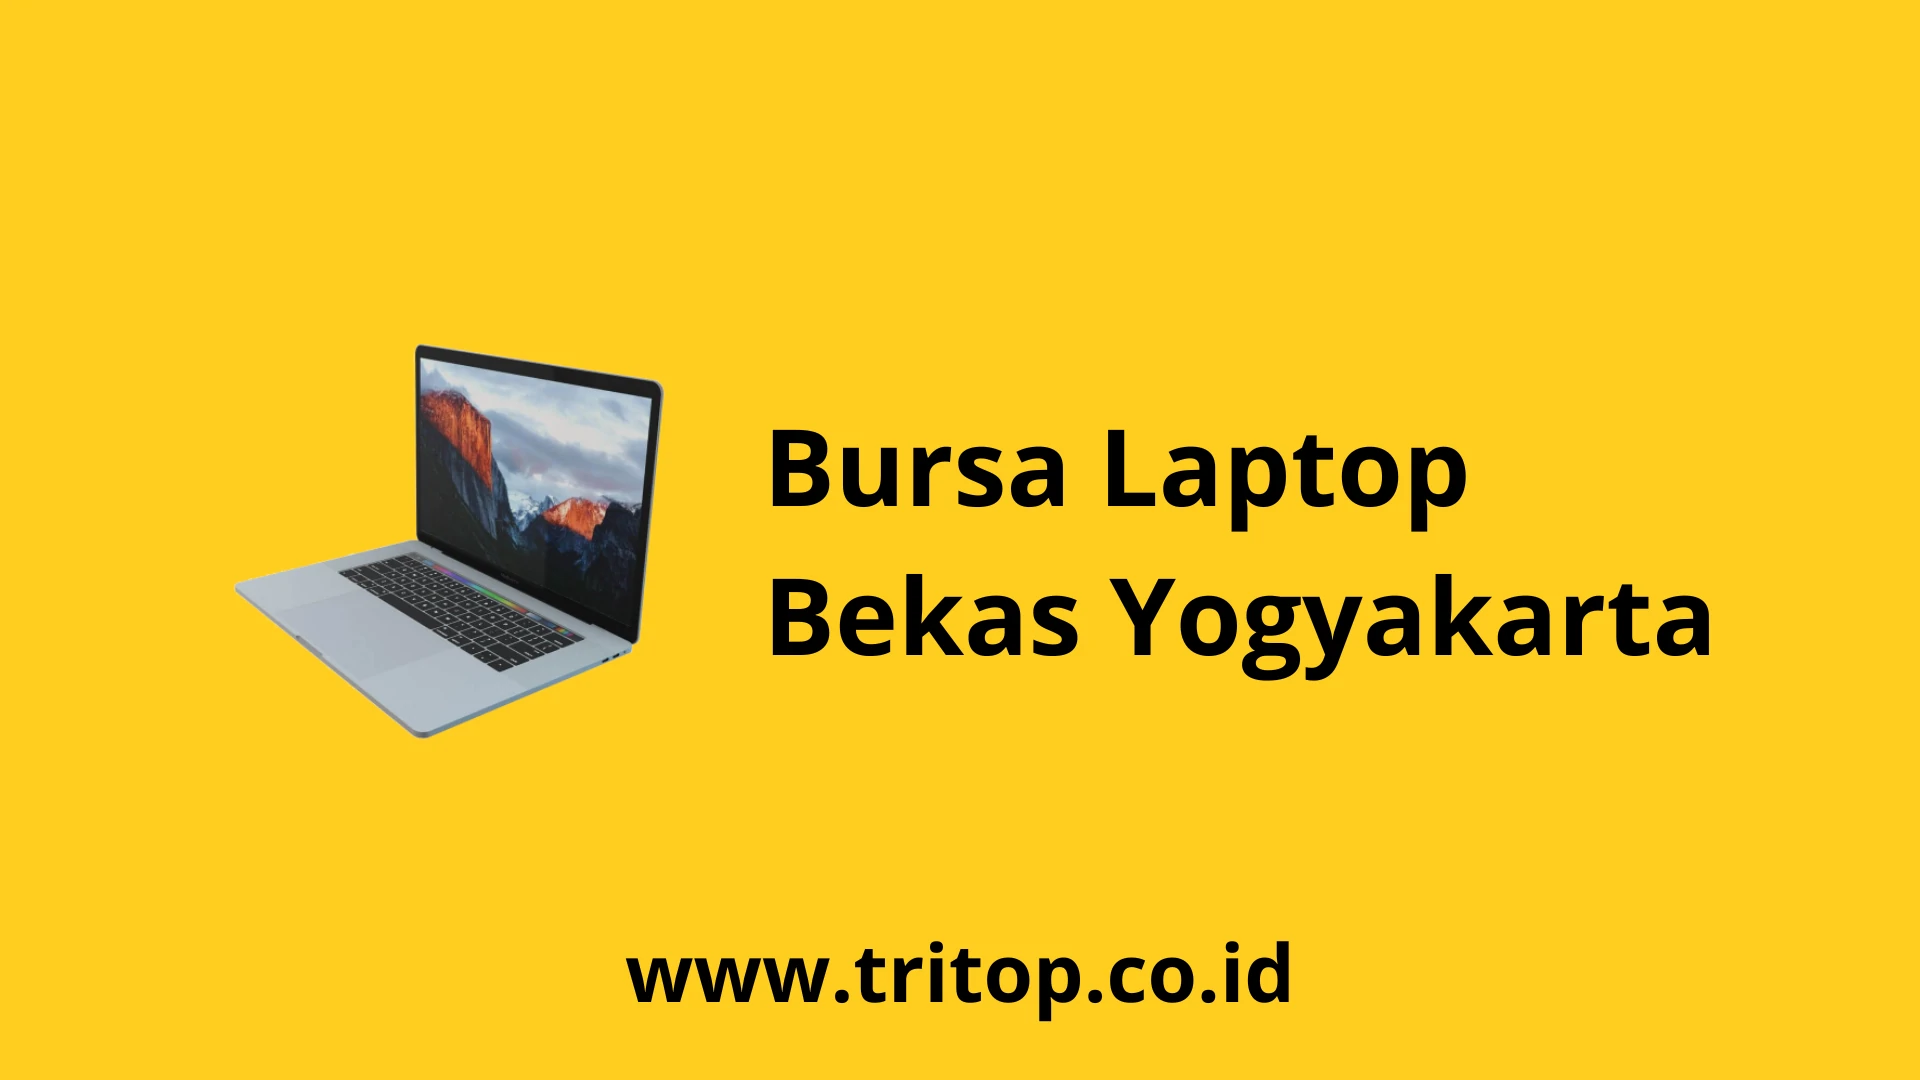 Bursa Laptop Bekas Yogyakarta www.tritop.co.id